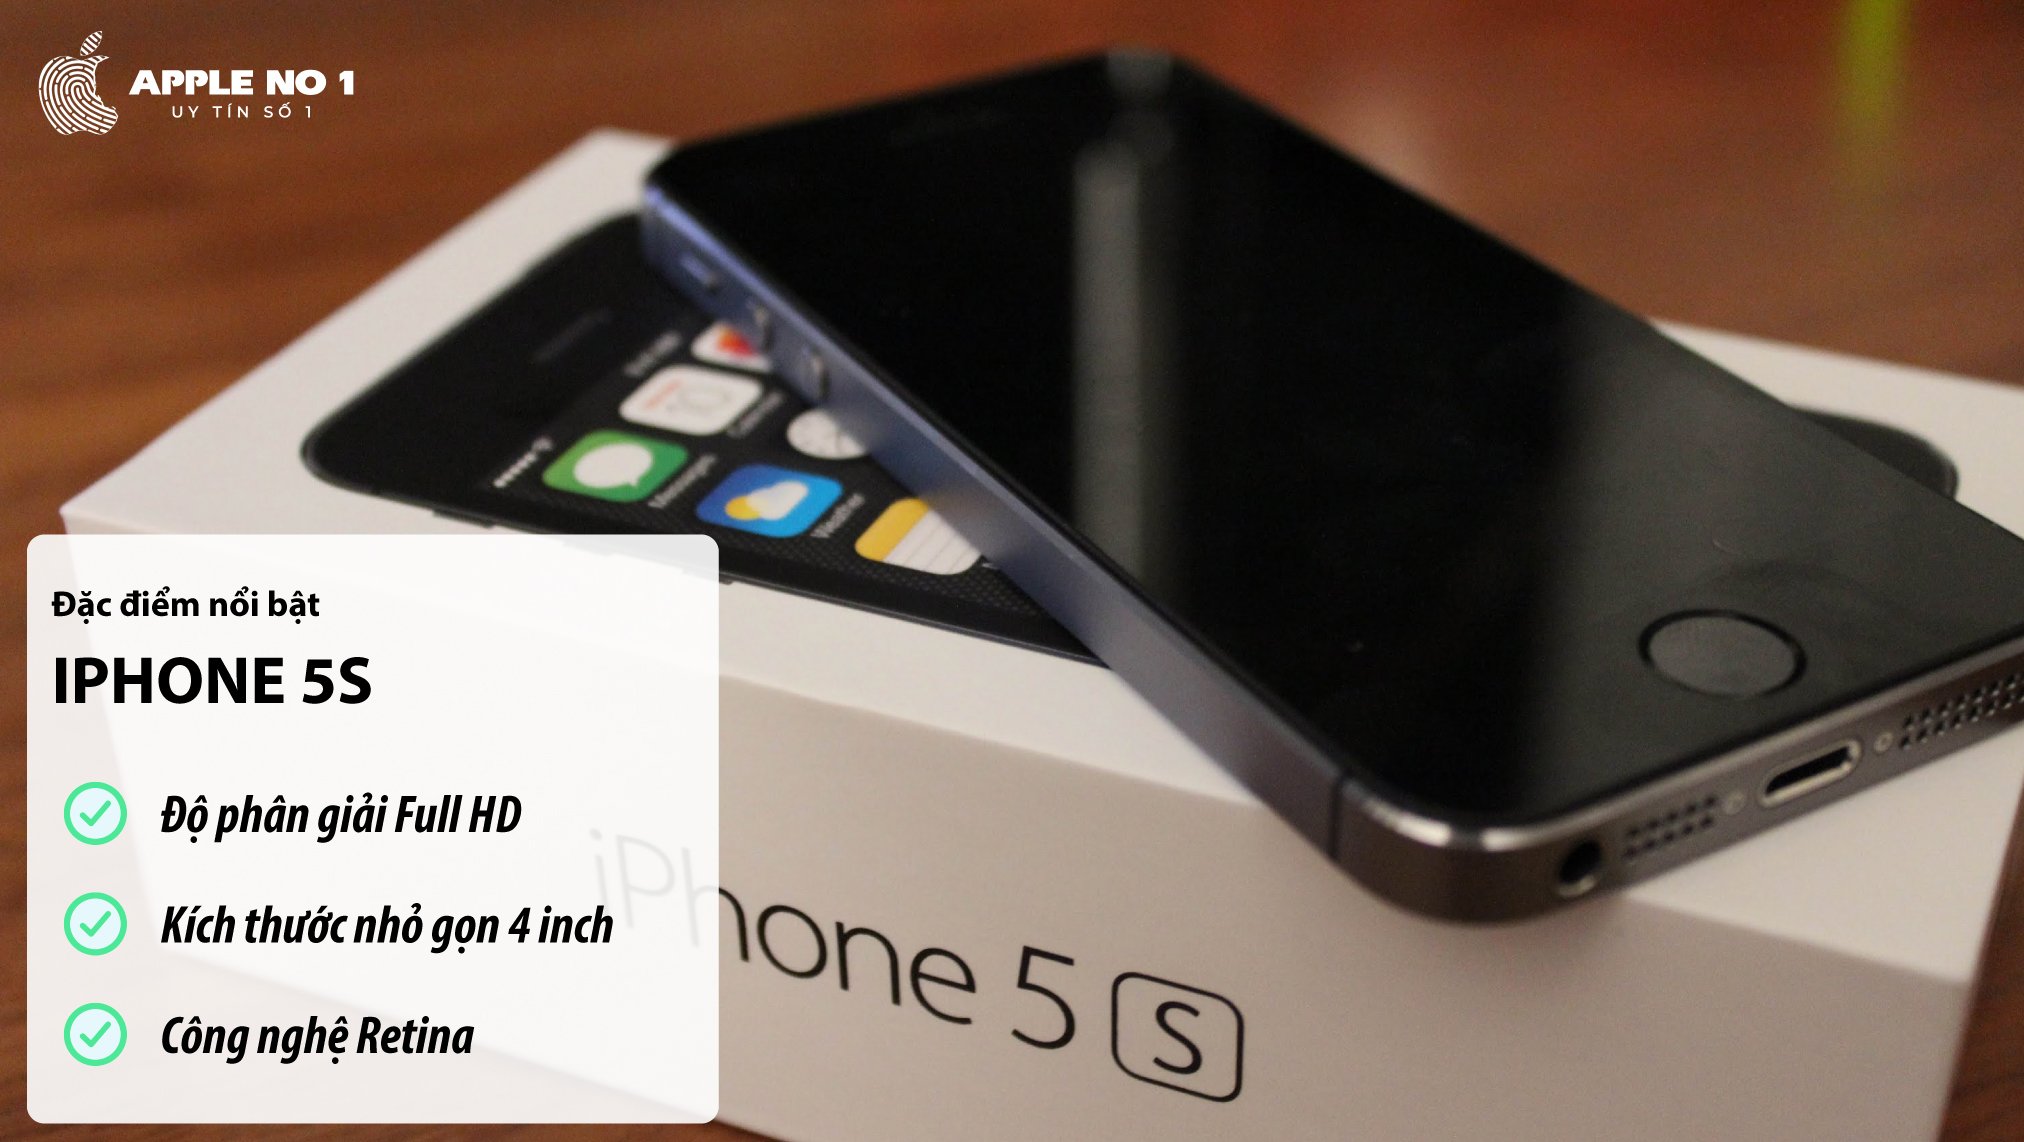 Điện thoại iPhone 5s với màn hình sắc nét, hiệu năng vượt trội